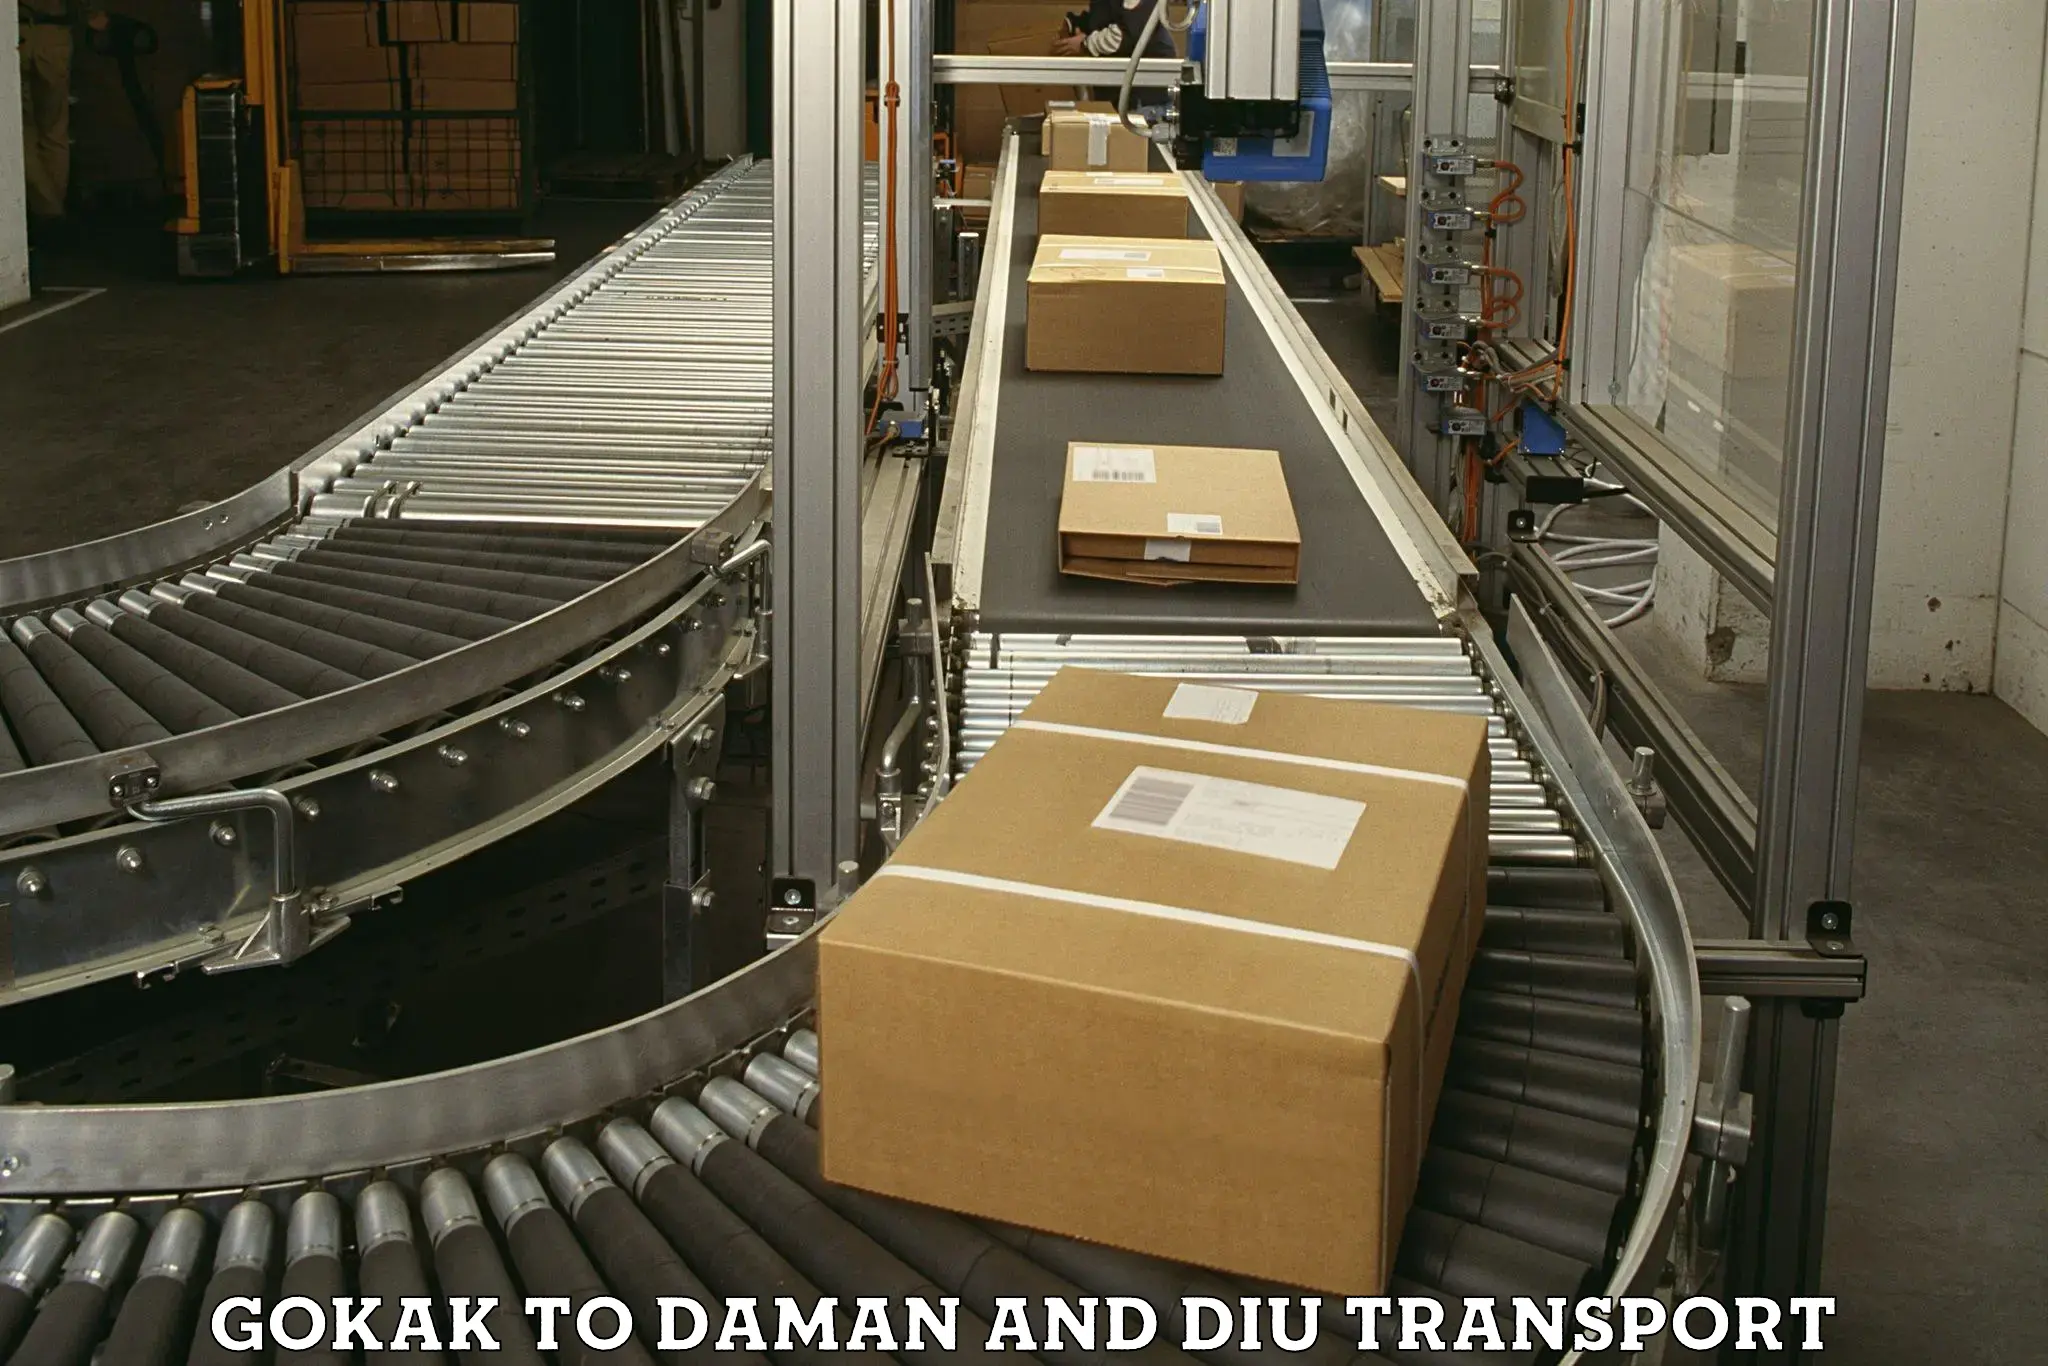 Lorry transport service Gokak to Daman and Diu